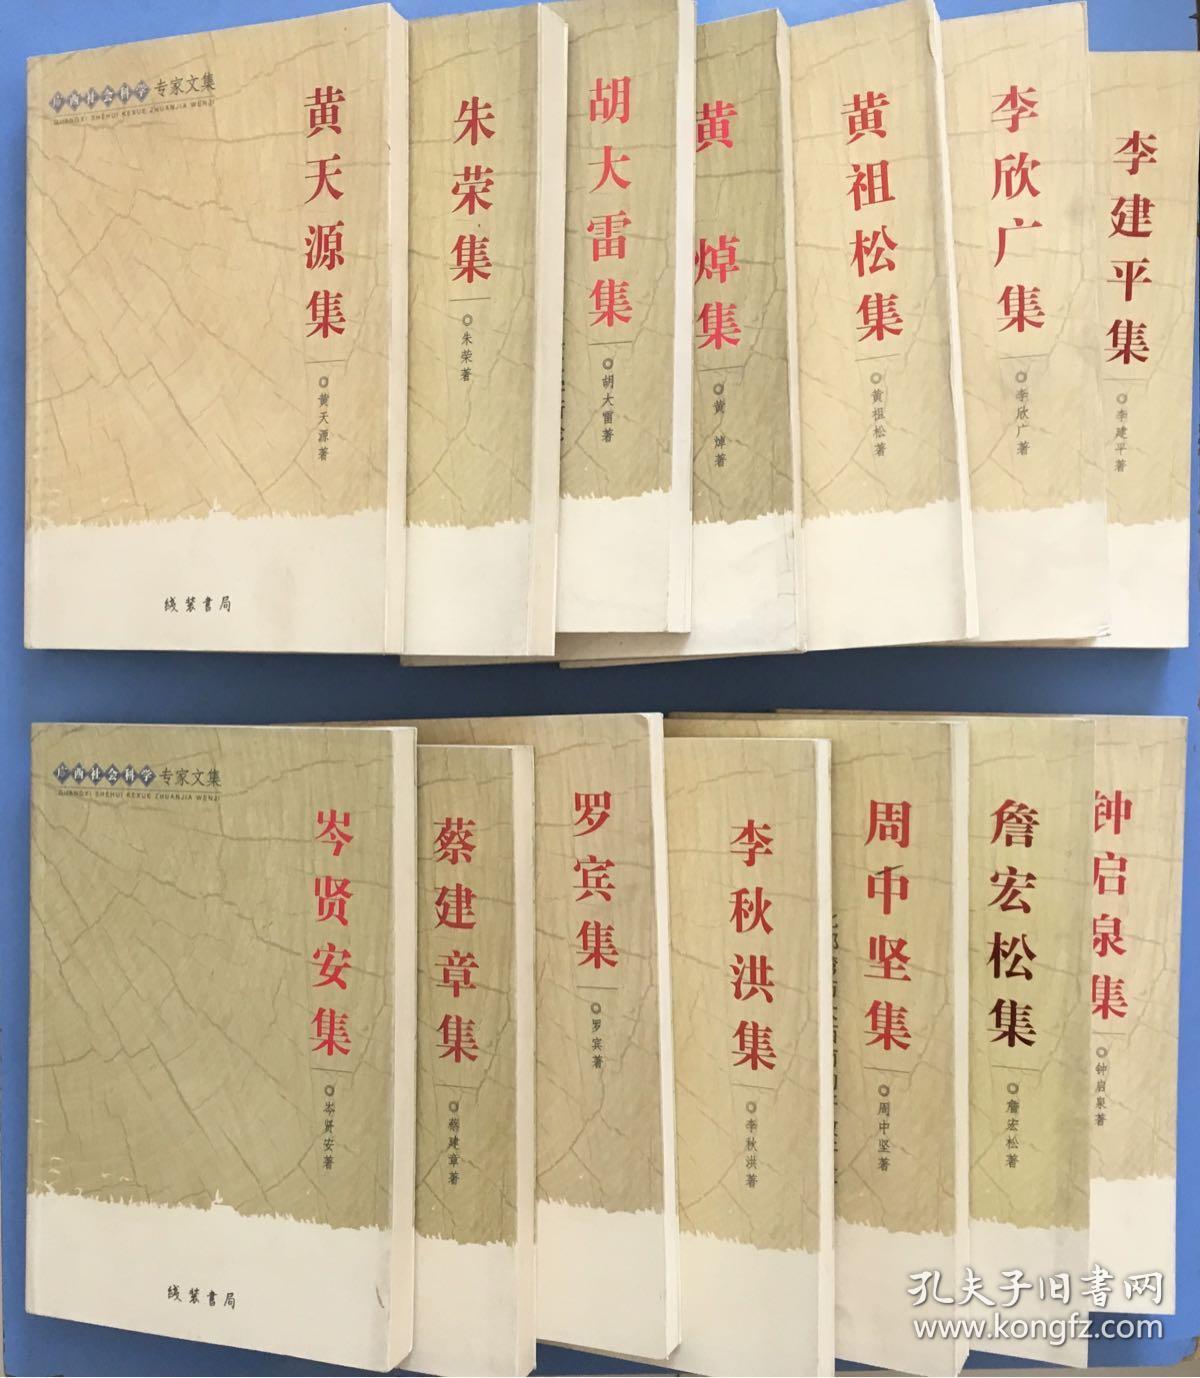 比较少见，广西社会科学专家文集《刘家纪集》《丘振声集》《麦永雄集》《刘家纪集》《黄焯集》等等共计43本